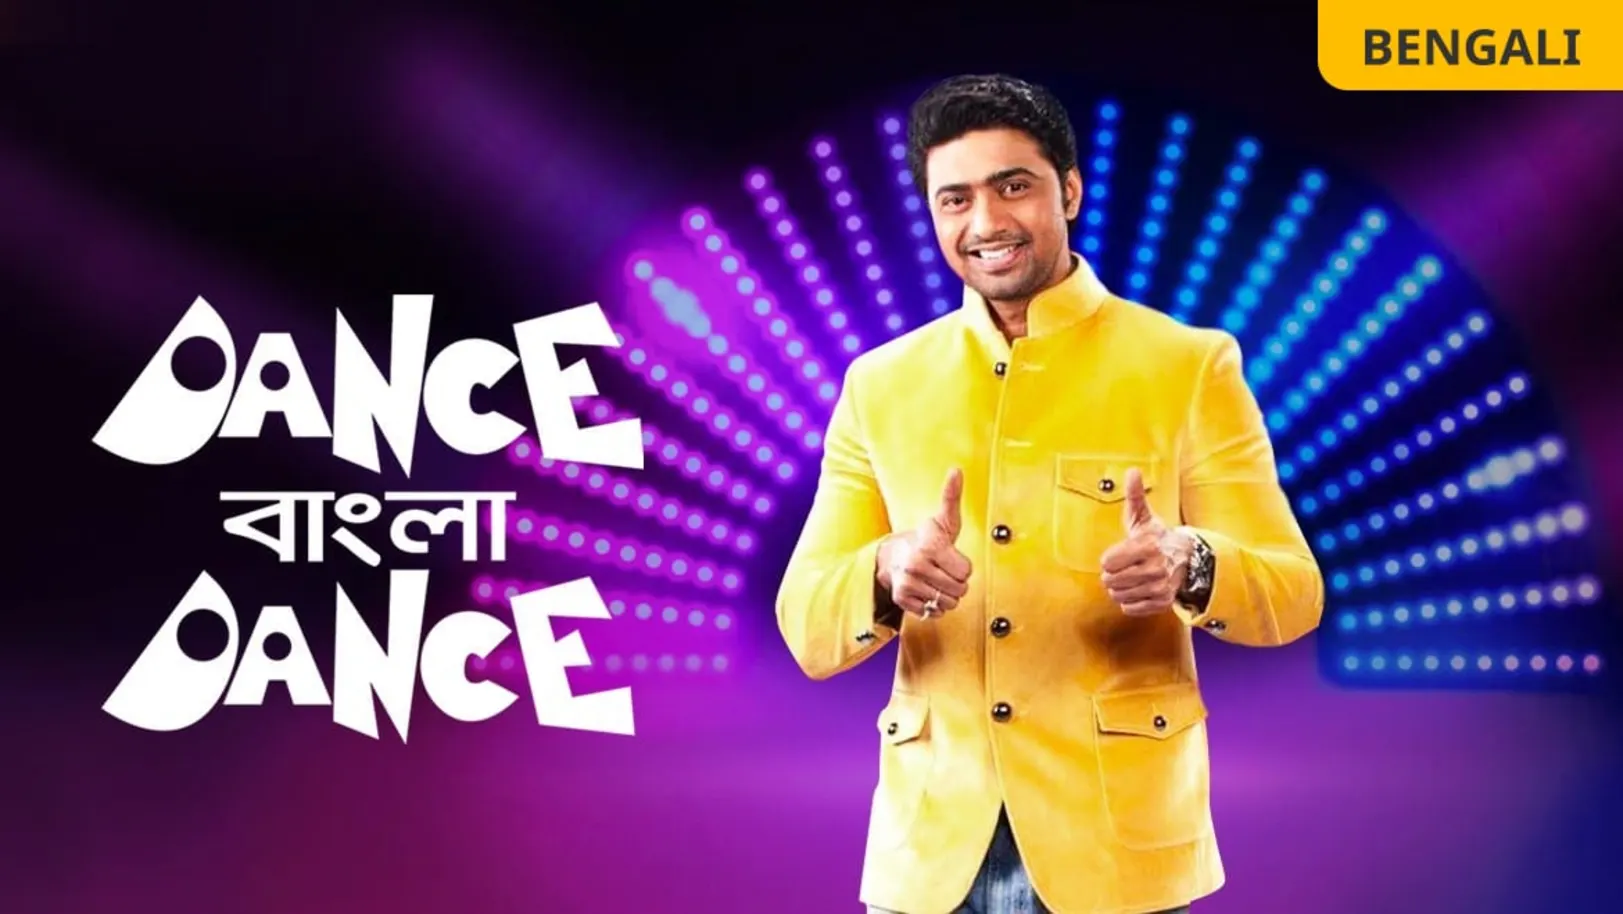 Dance Bangla Dance Season 8 TV Show